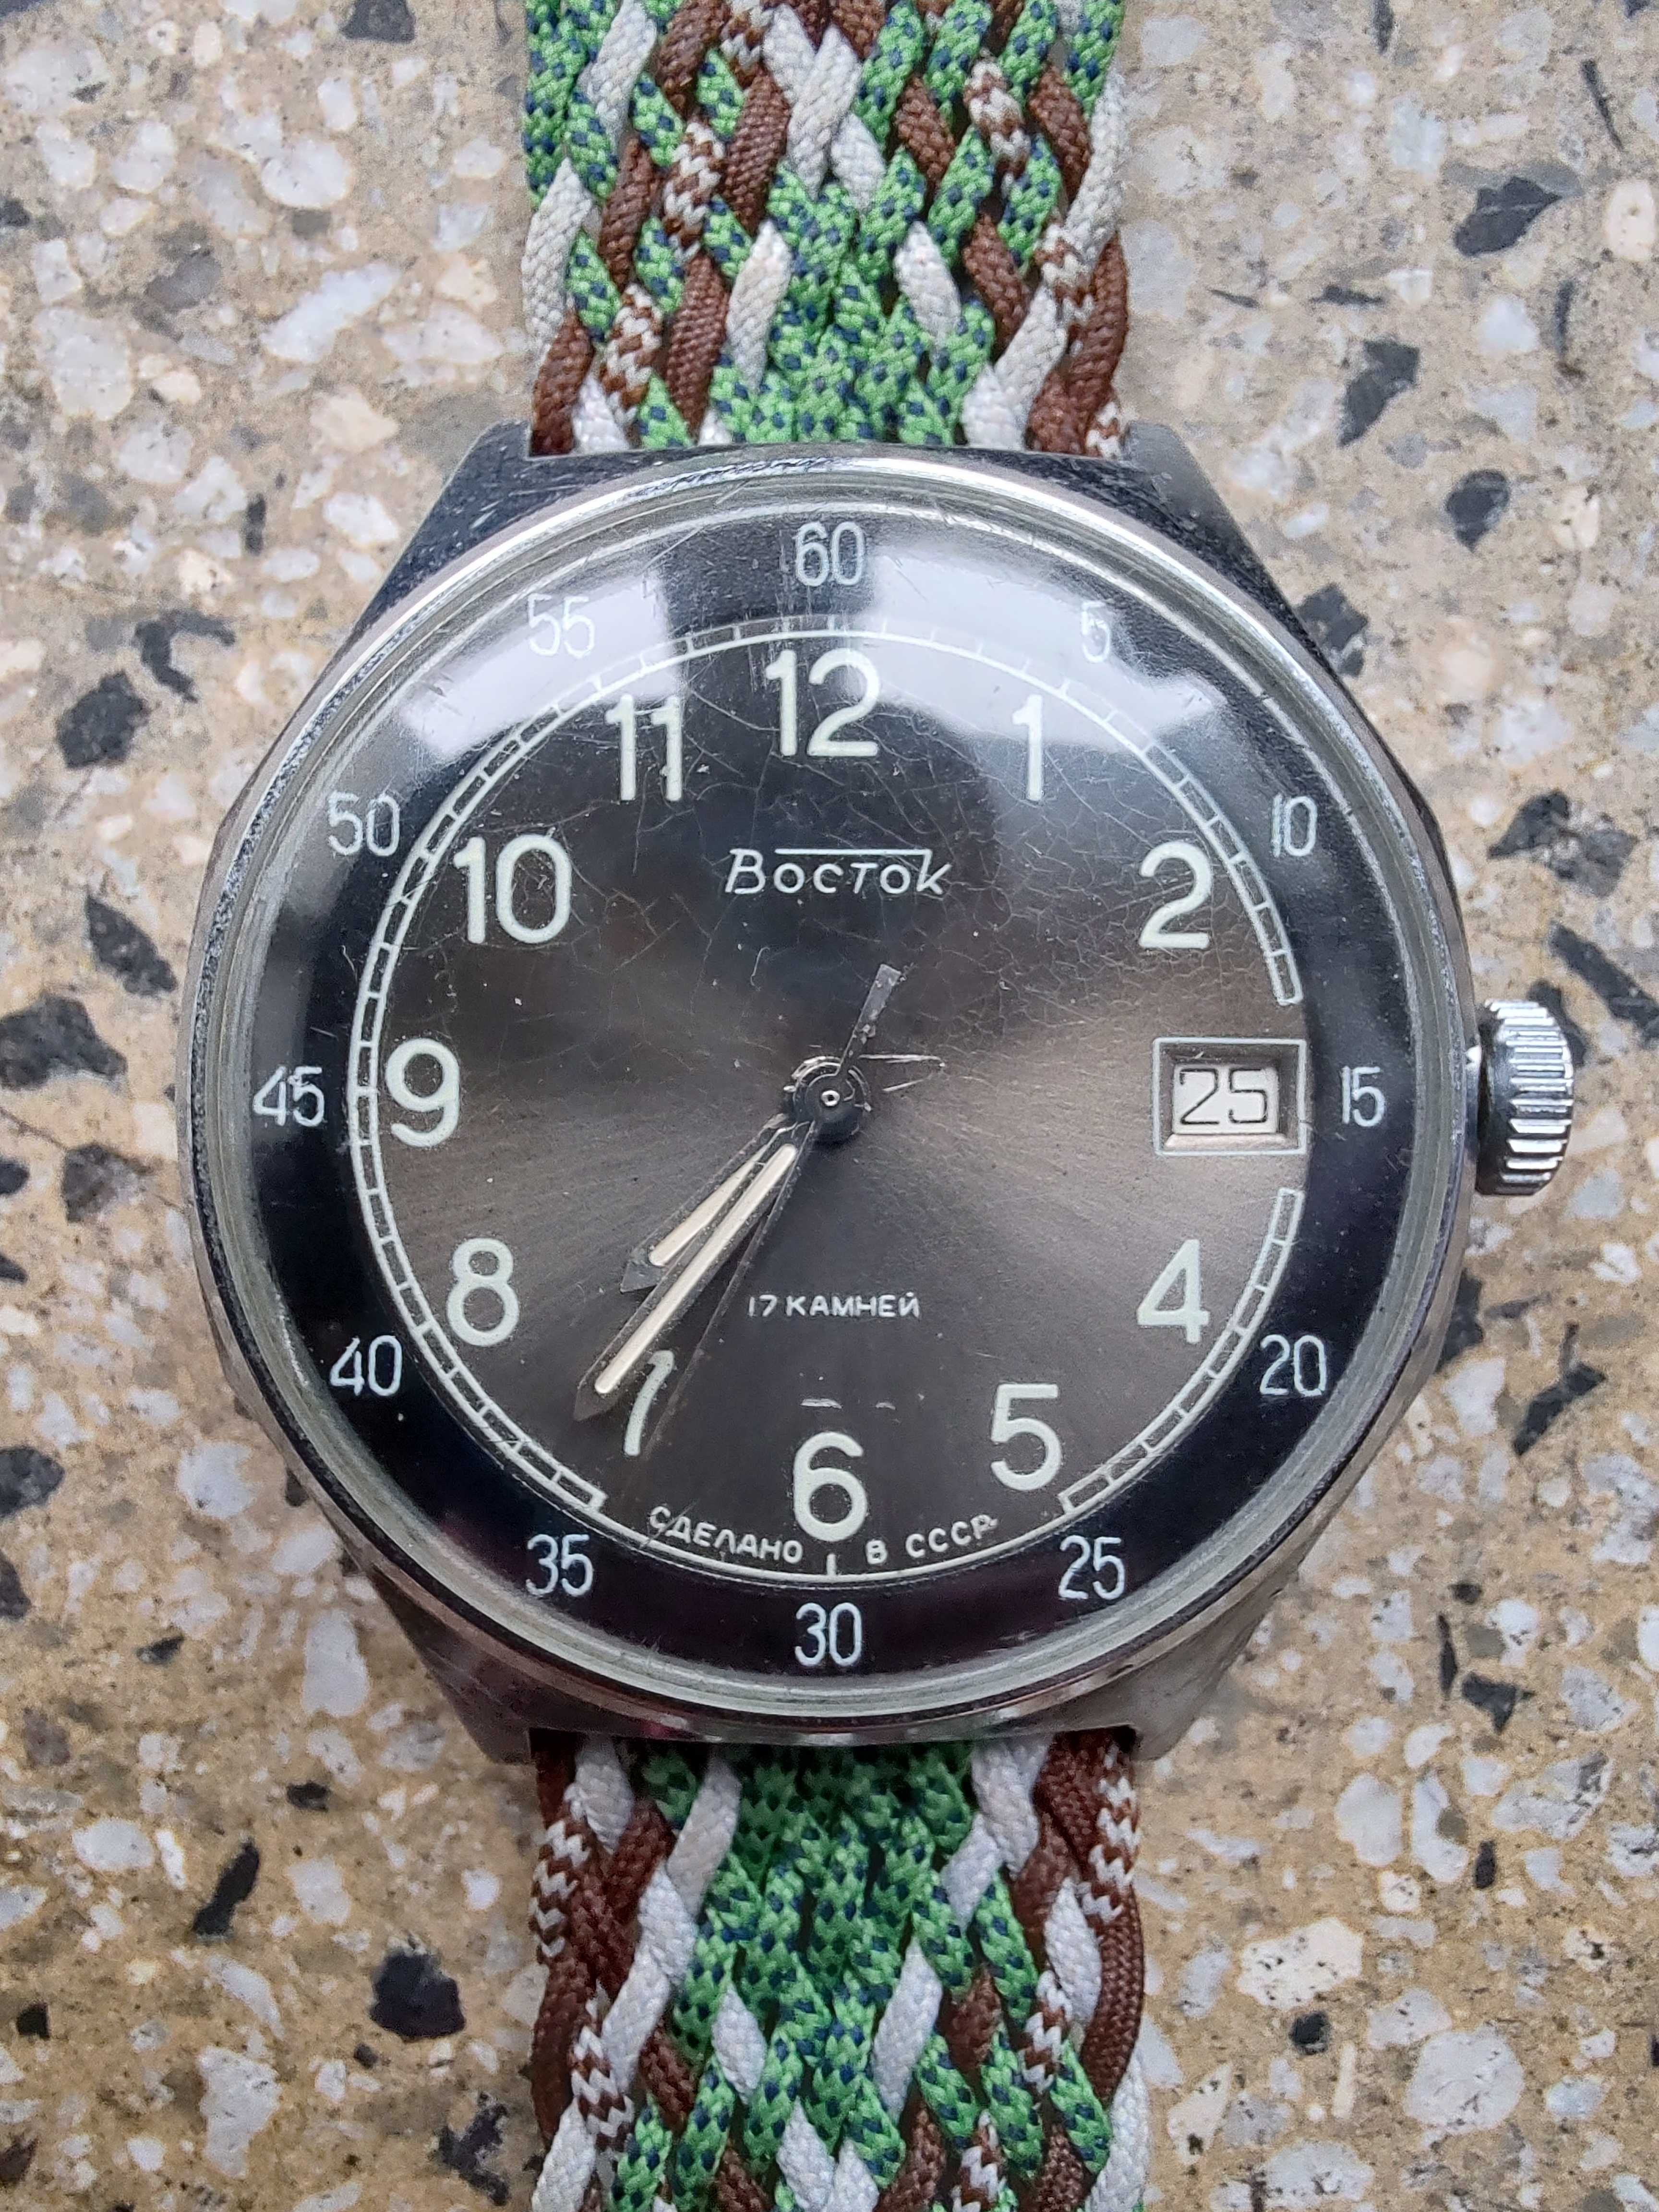 Zegarek mechaniczny Wostok (Boctok, Vostok, Восто́к) - lata '80